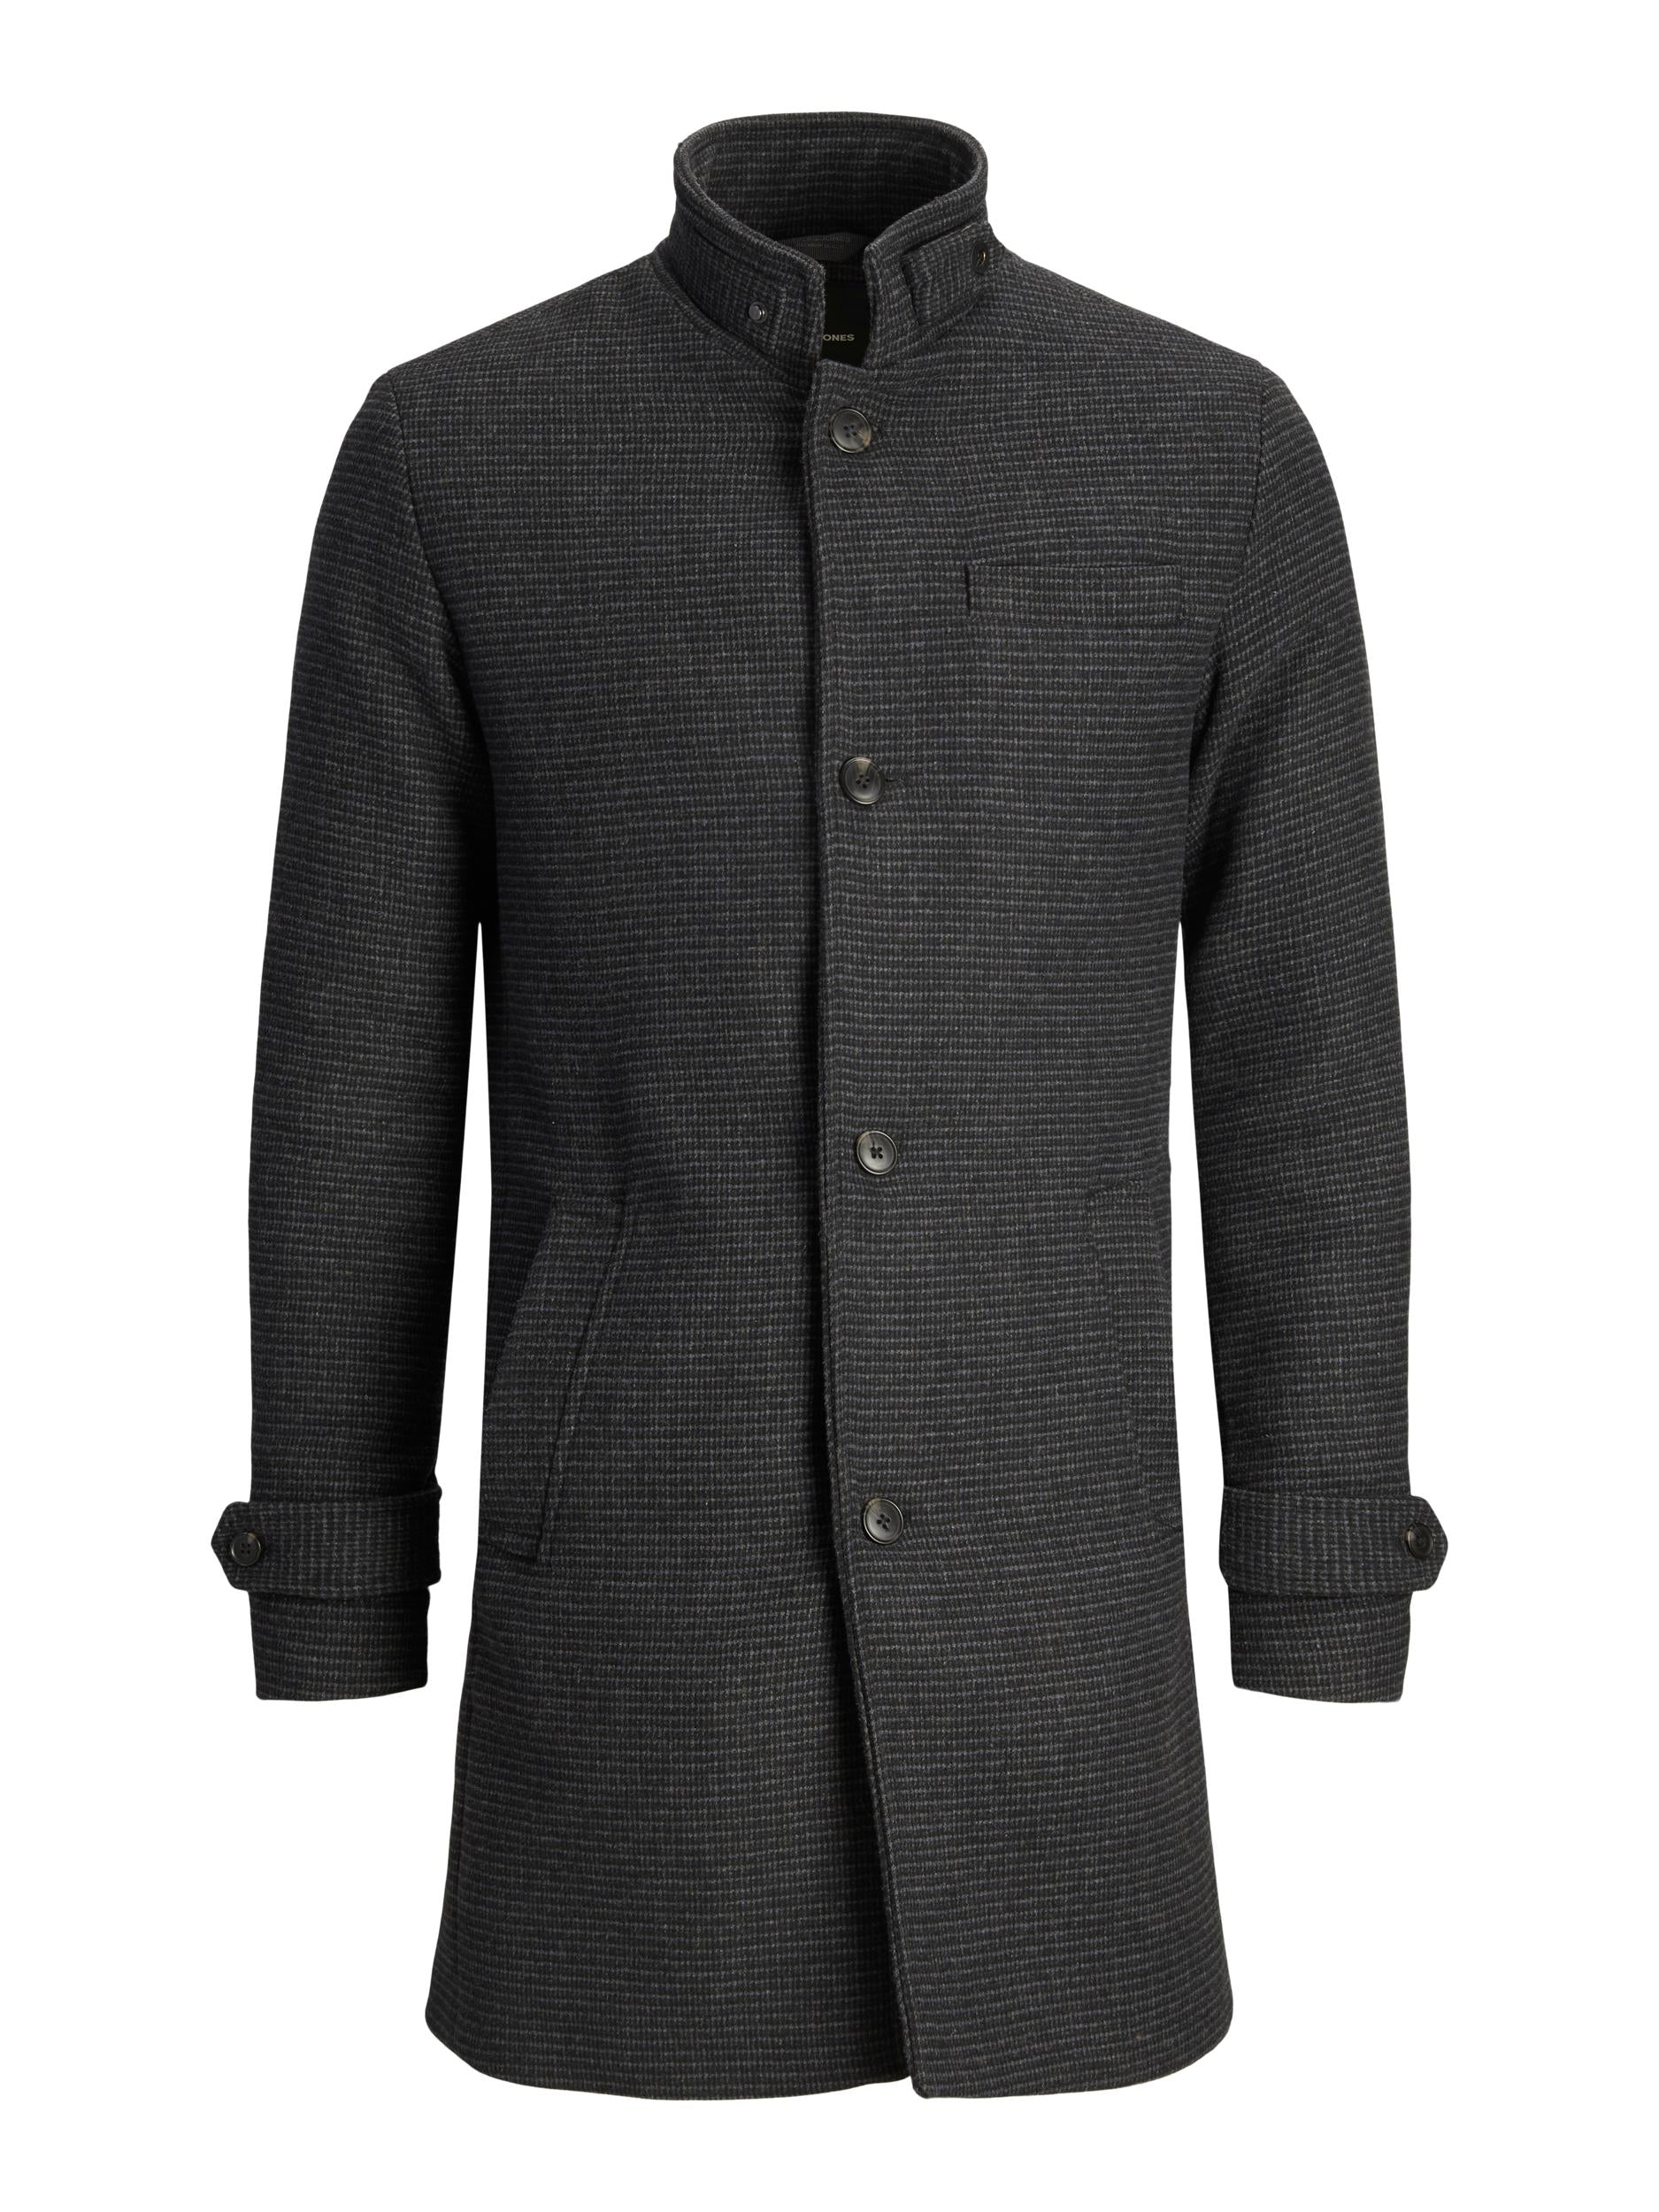 Men's Blamelton Wool Coat Dark Grey-Ghost Front View